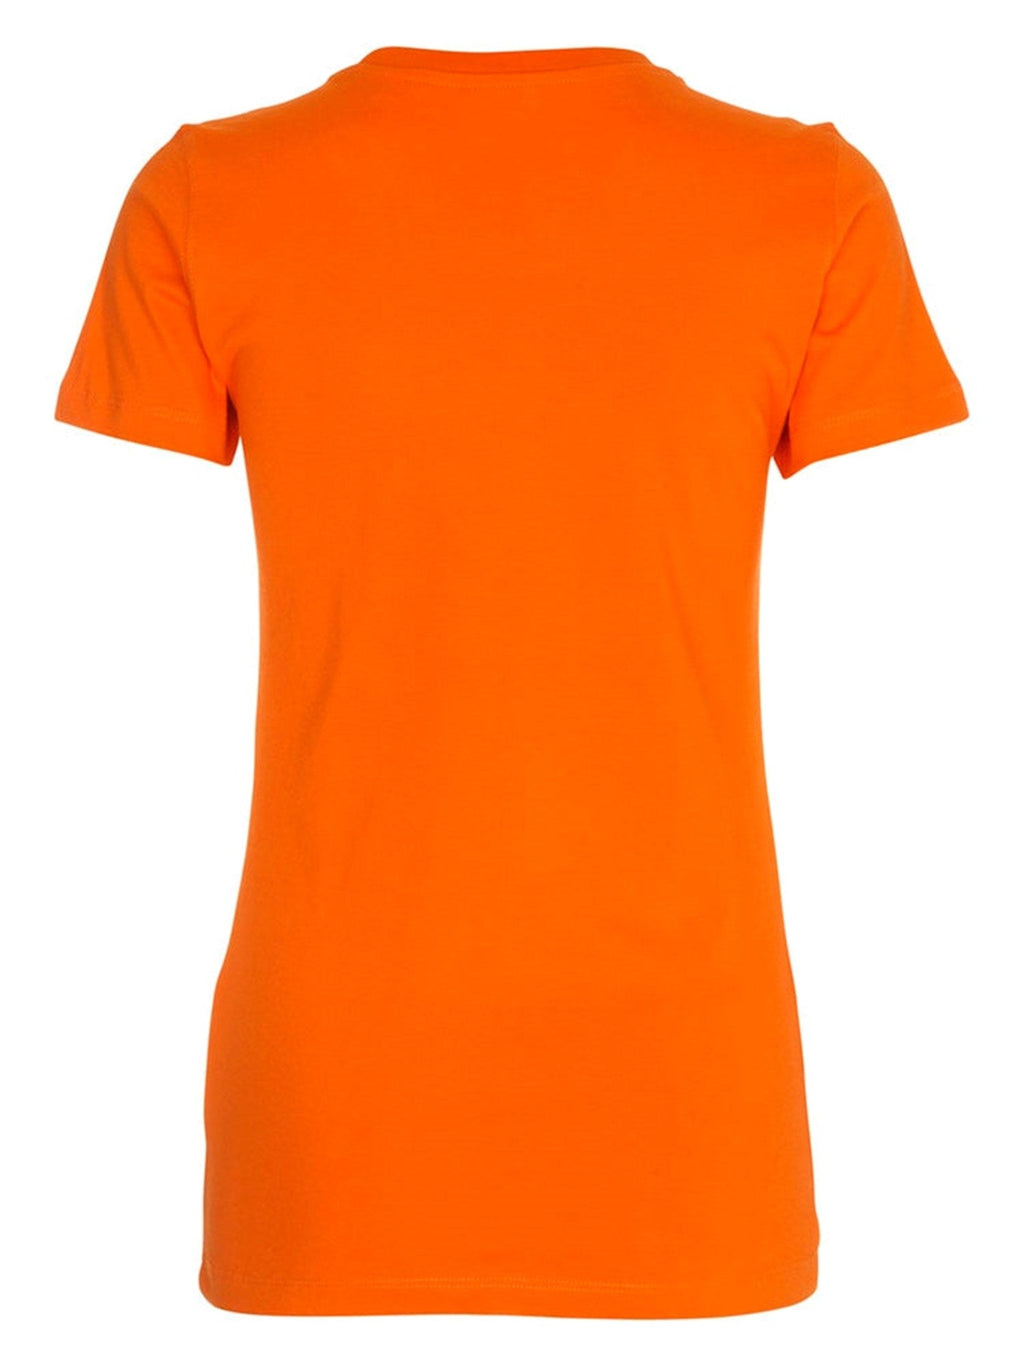 Įrengti marškinėliai - oranžiniai